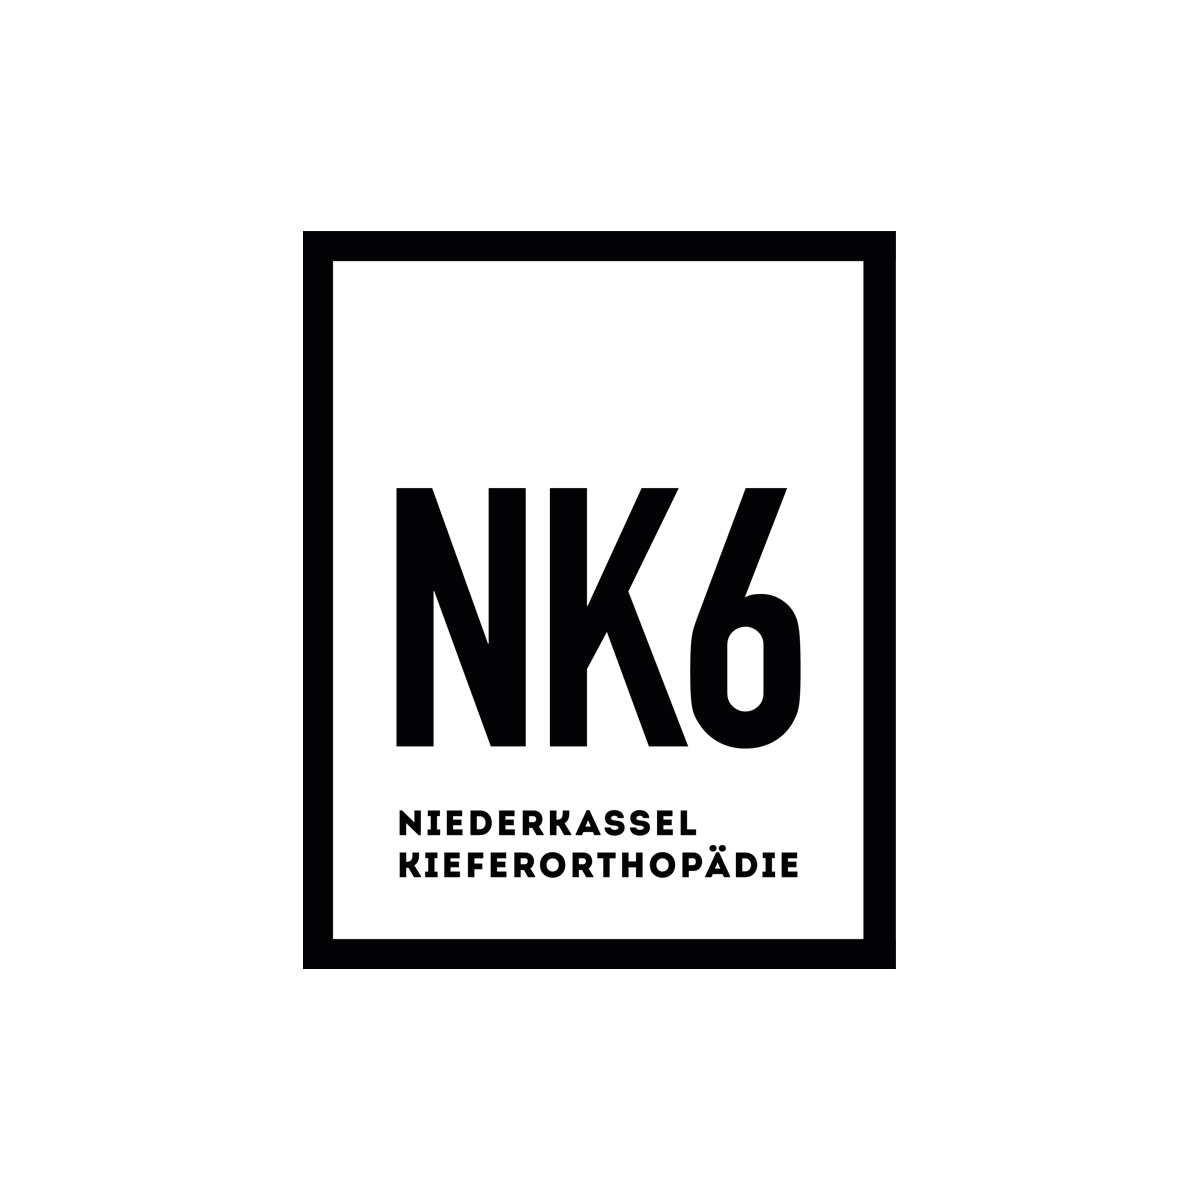 NK6 Ihre Kieferorthopäden in Düsseldorf/Niederkassel. Moderne und ästhetische Kieferorthopäden in NRW